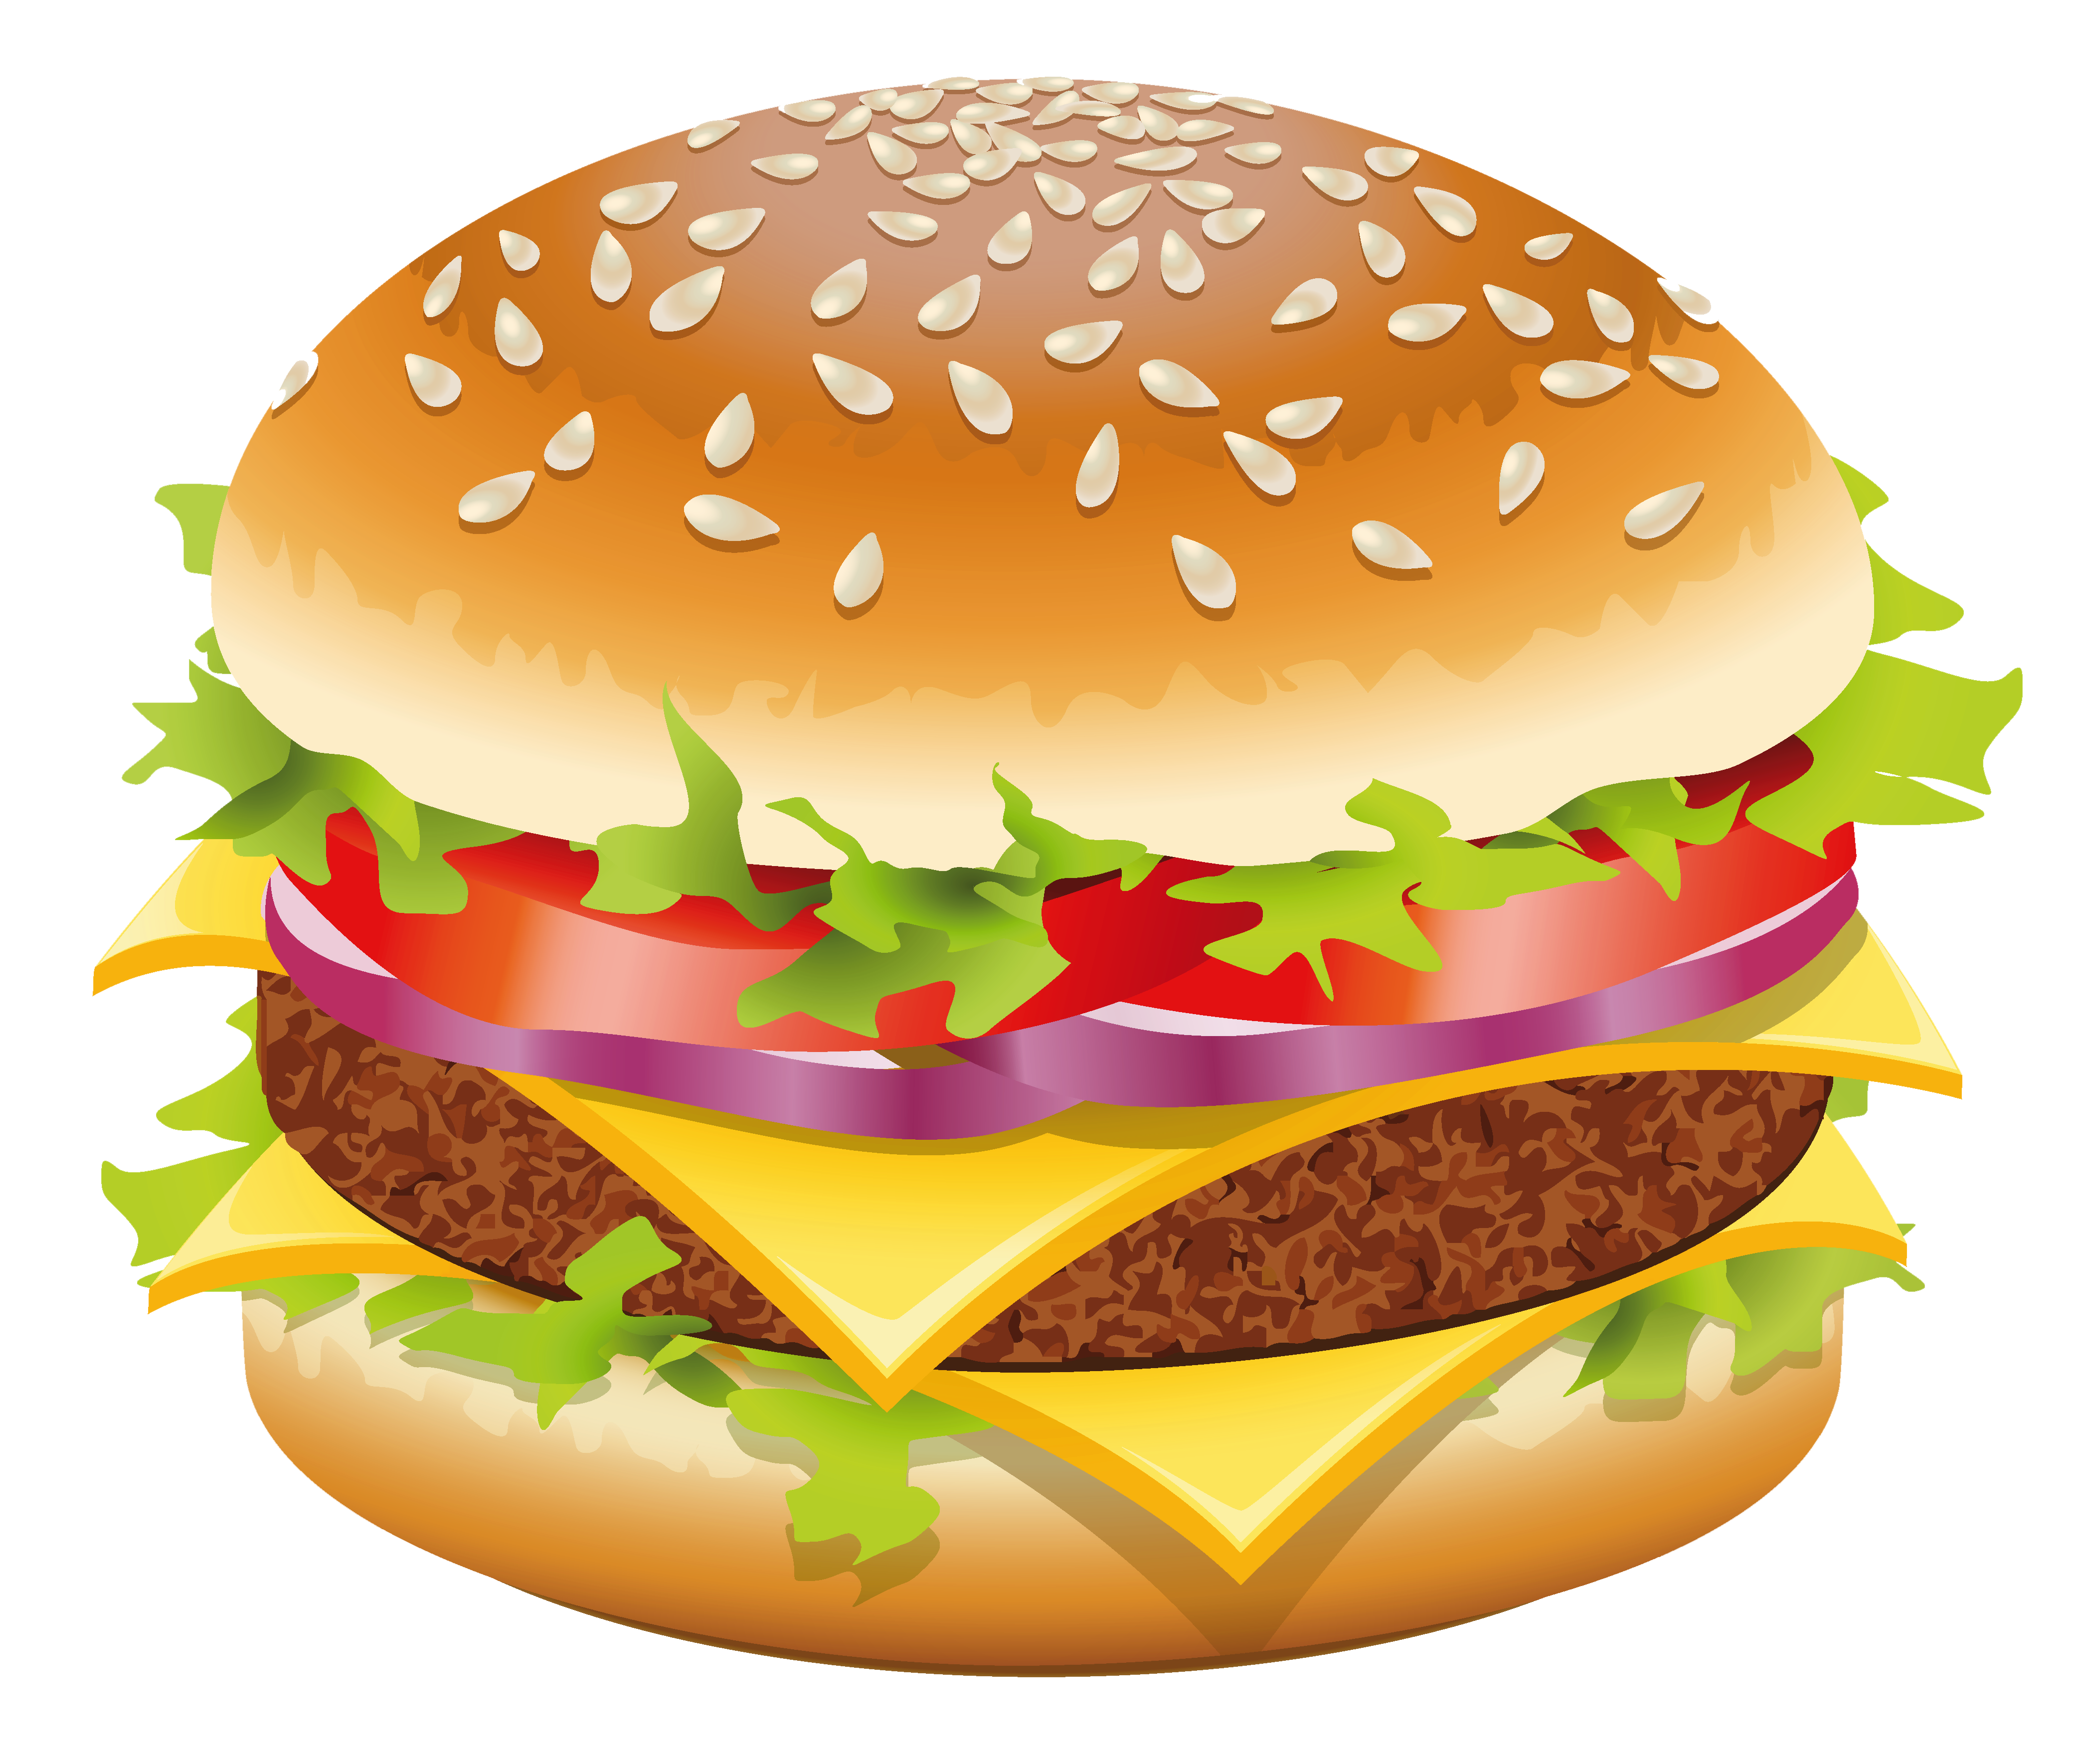 نقاشی دیجیتالی همبرگر خوشگل برای استفاده در سایت